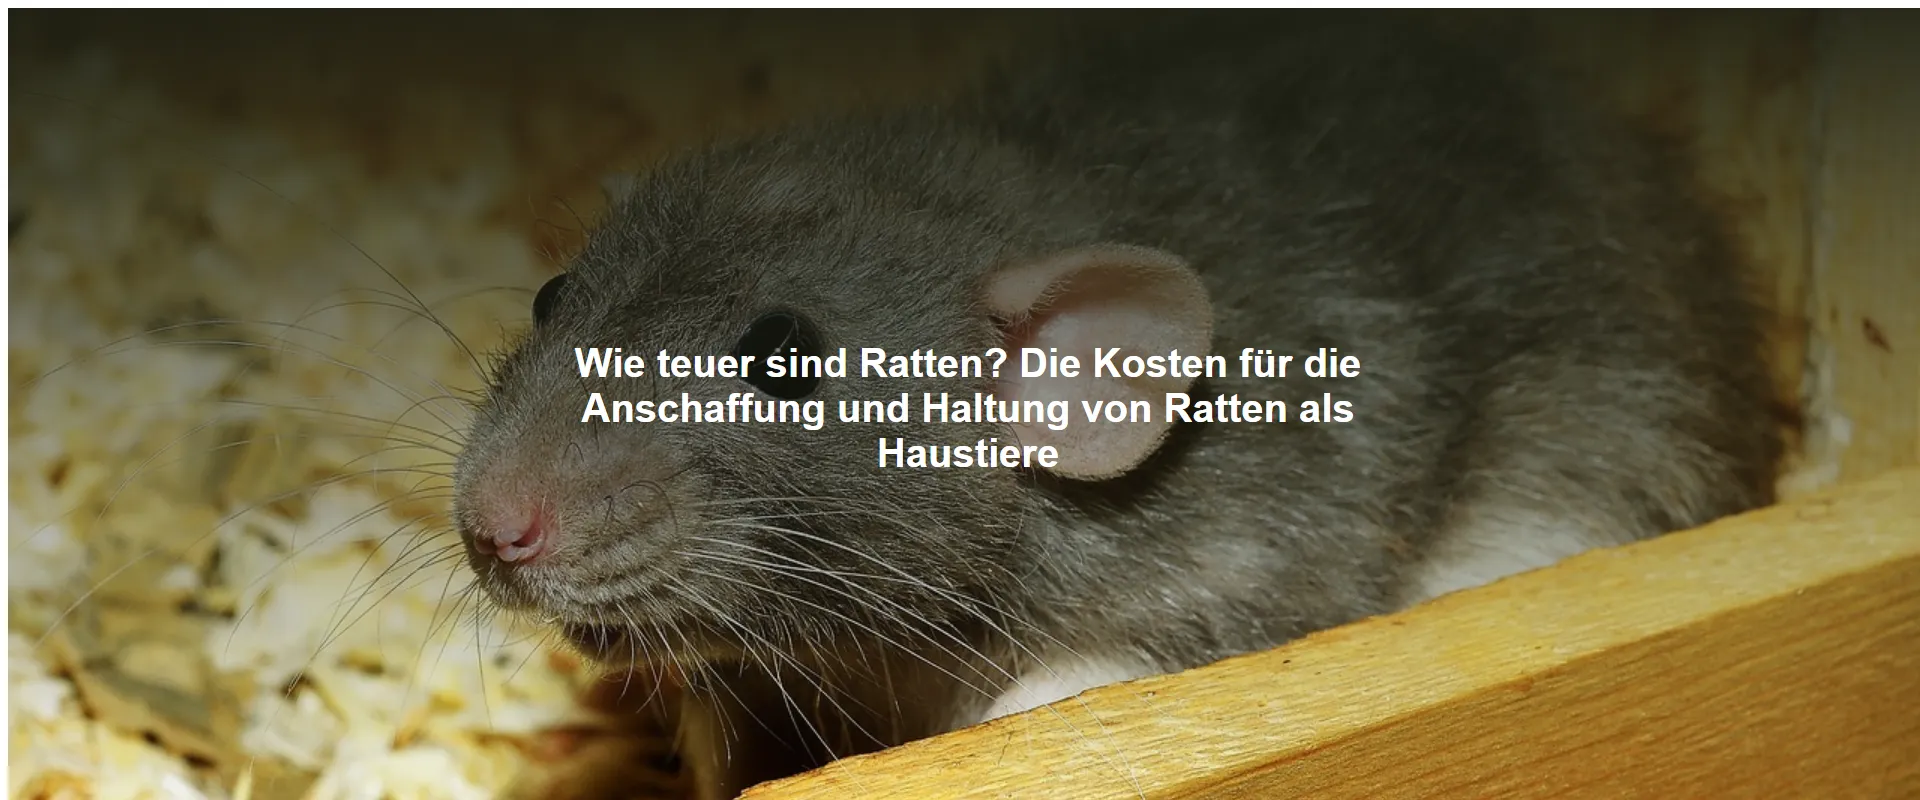 Wie teuer sind Ratten? Die Kosten für die Anschaffung und Haltung von Ratten als Haustiere